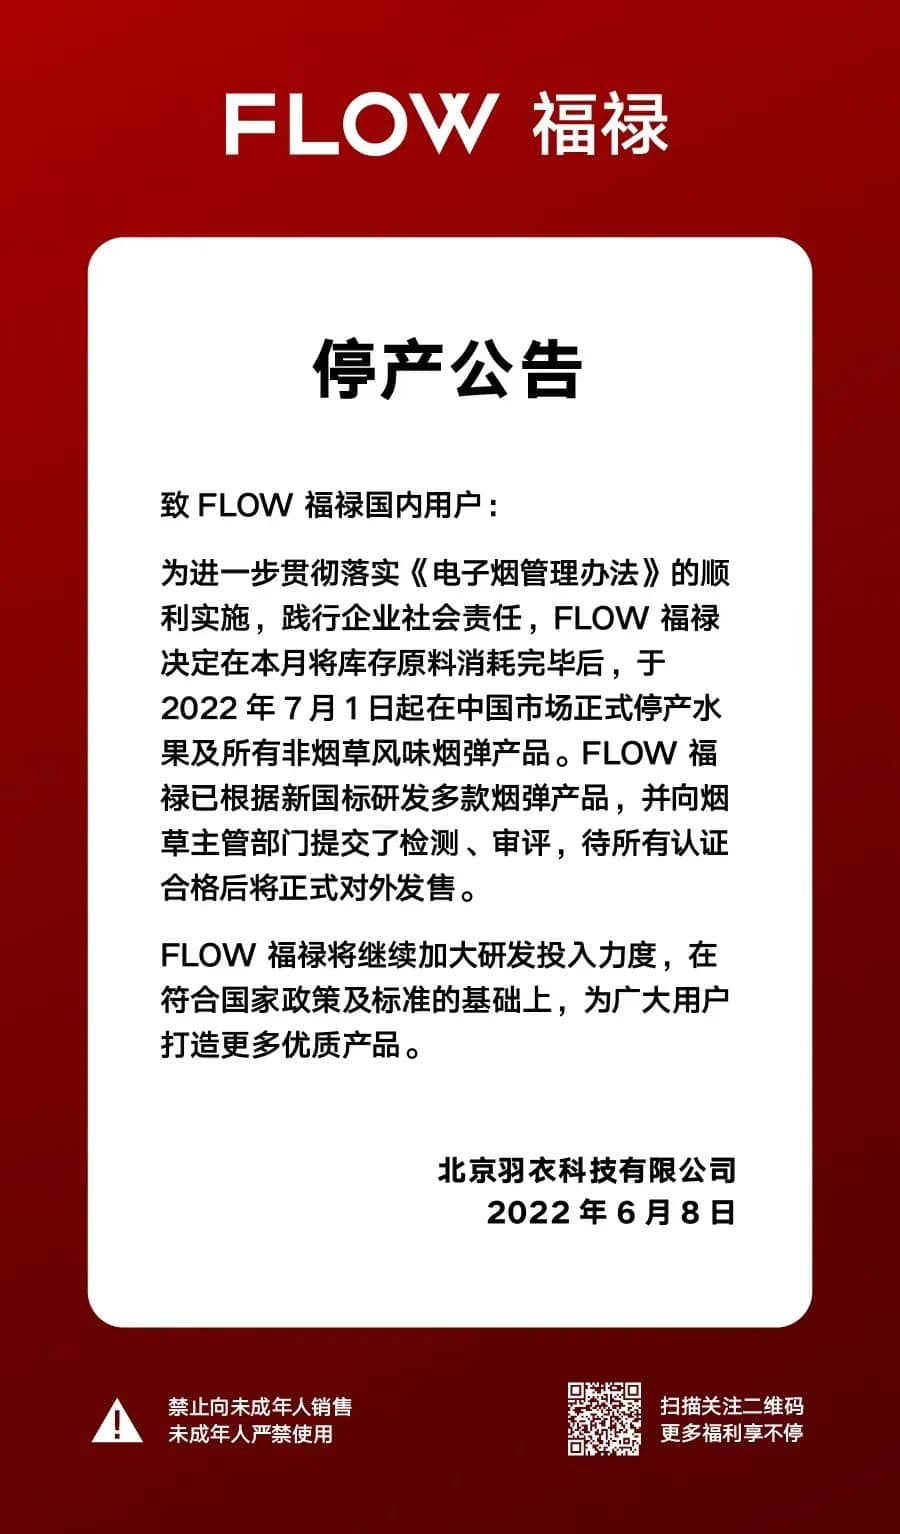 FLOW福禄停产公告